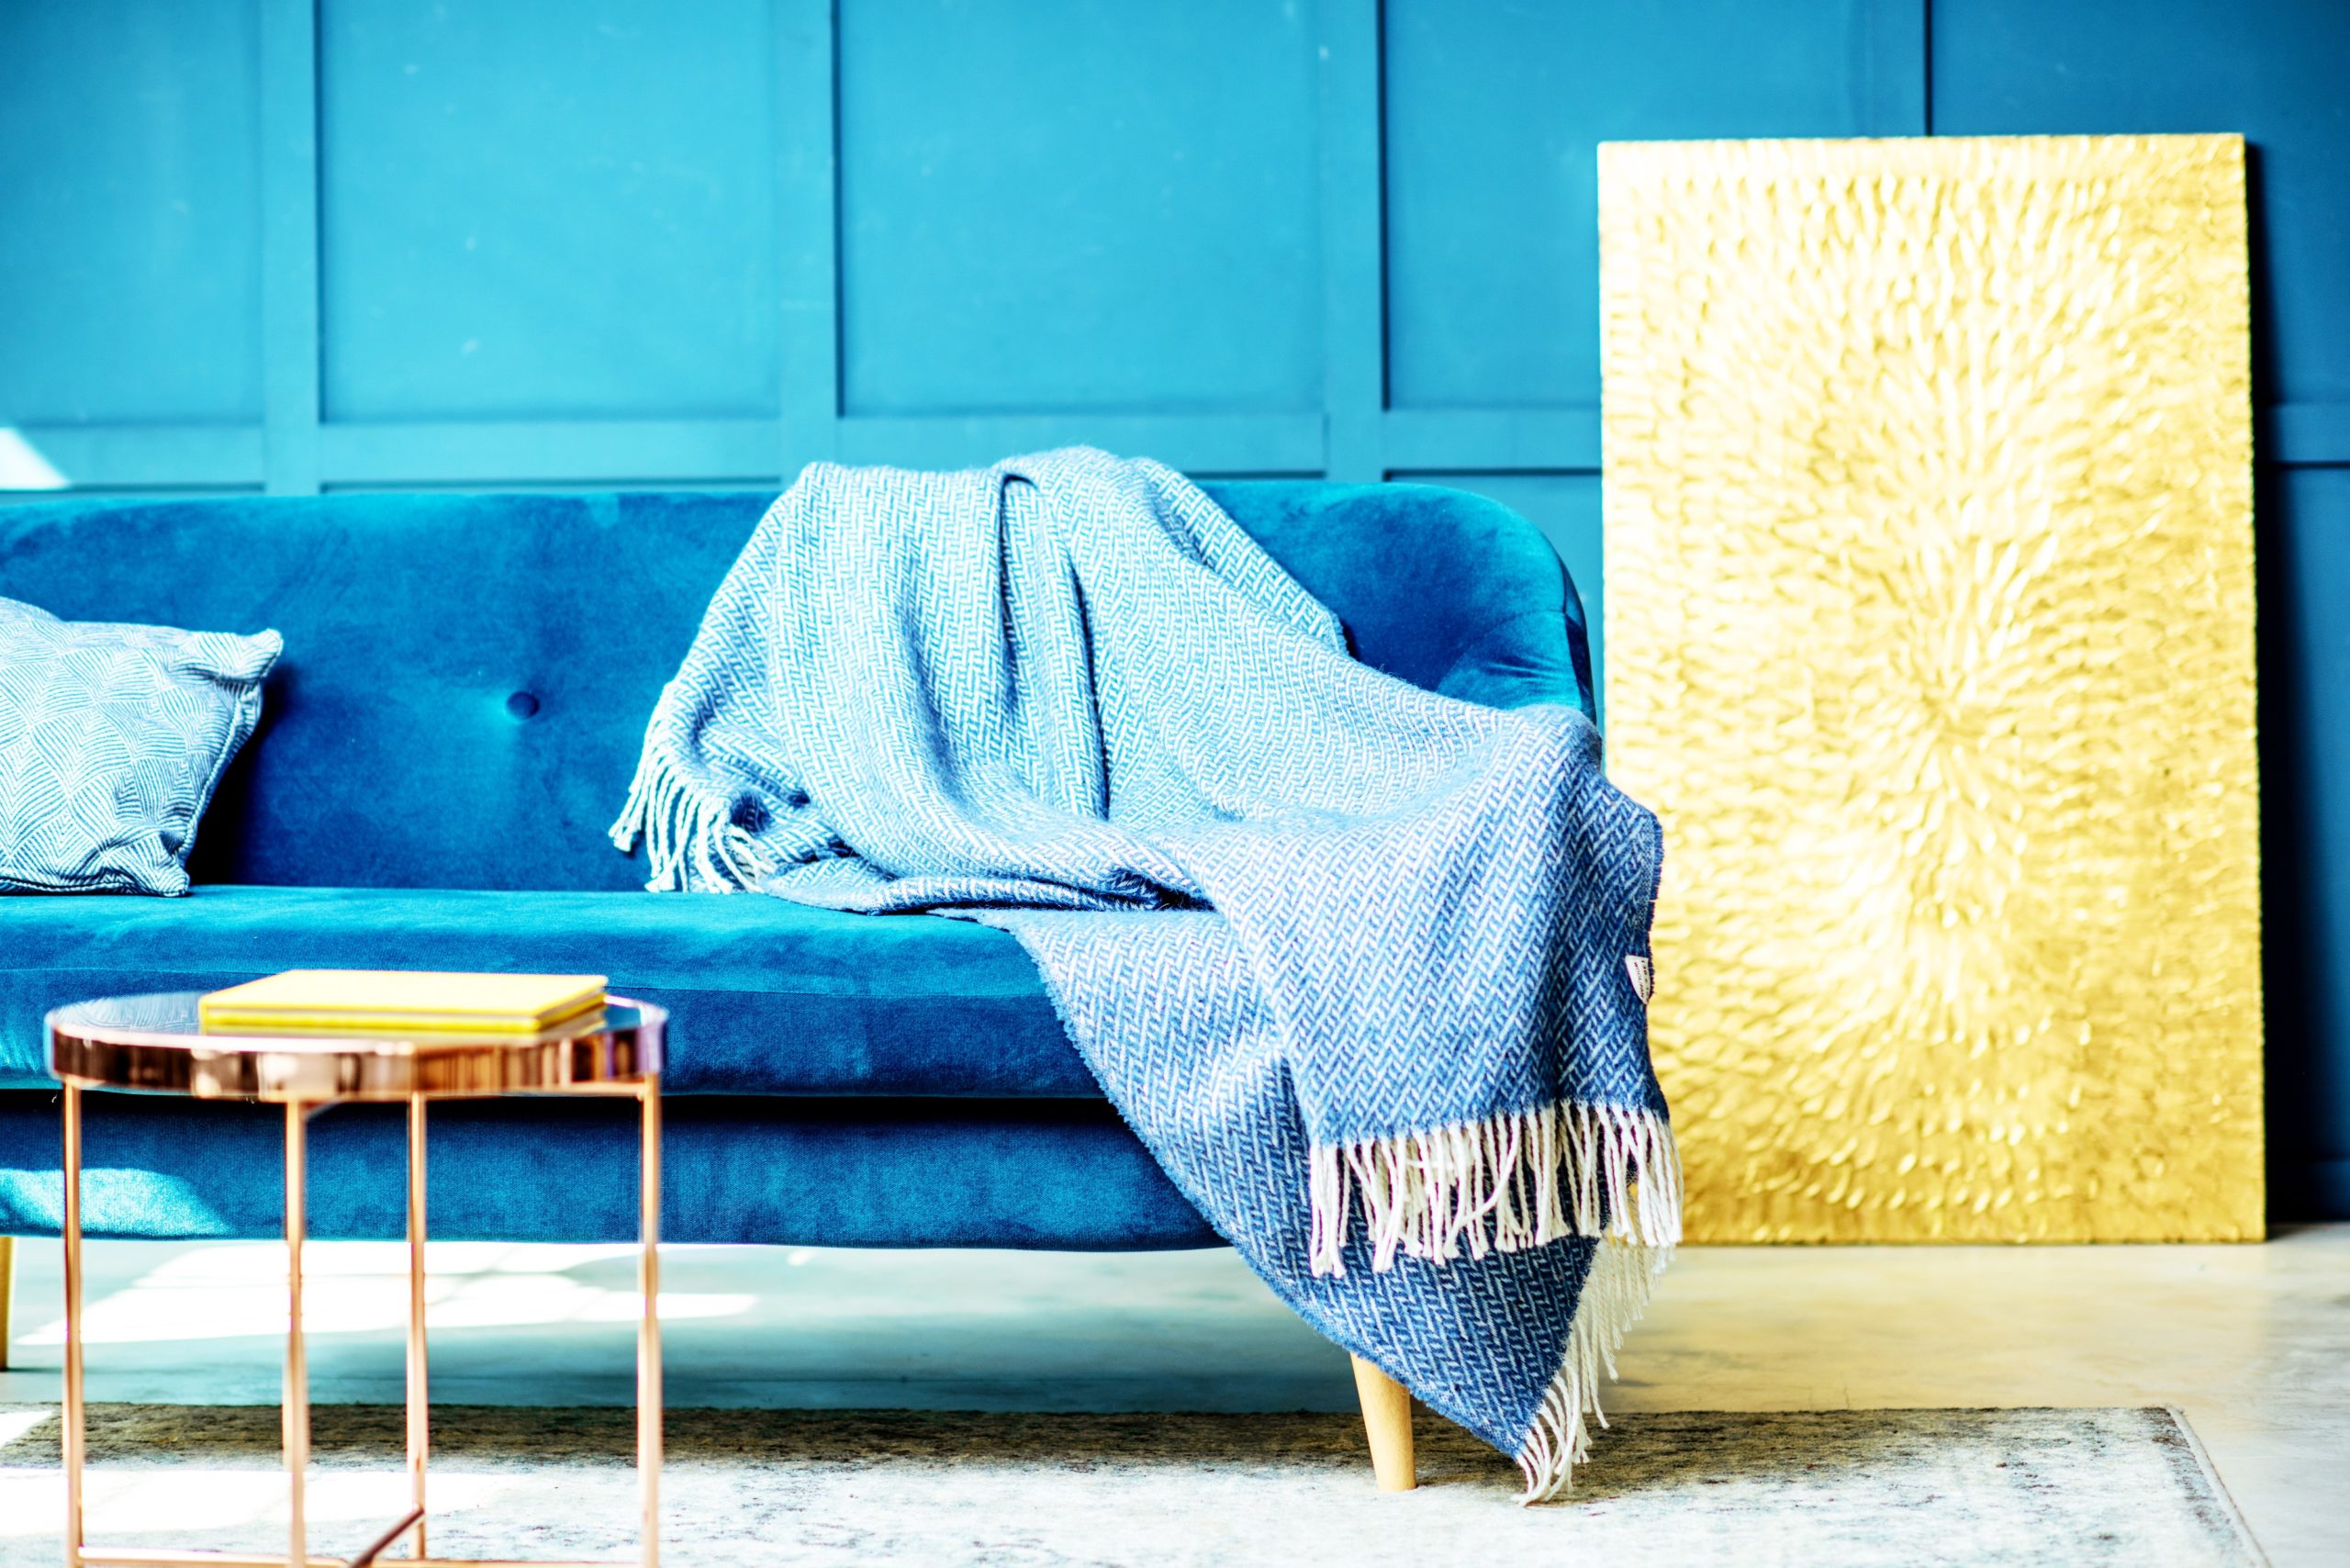 <img src="blue.jpg" alt="blue blanket on blue velvet sofa"/> 